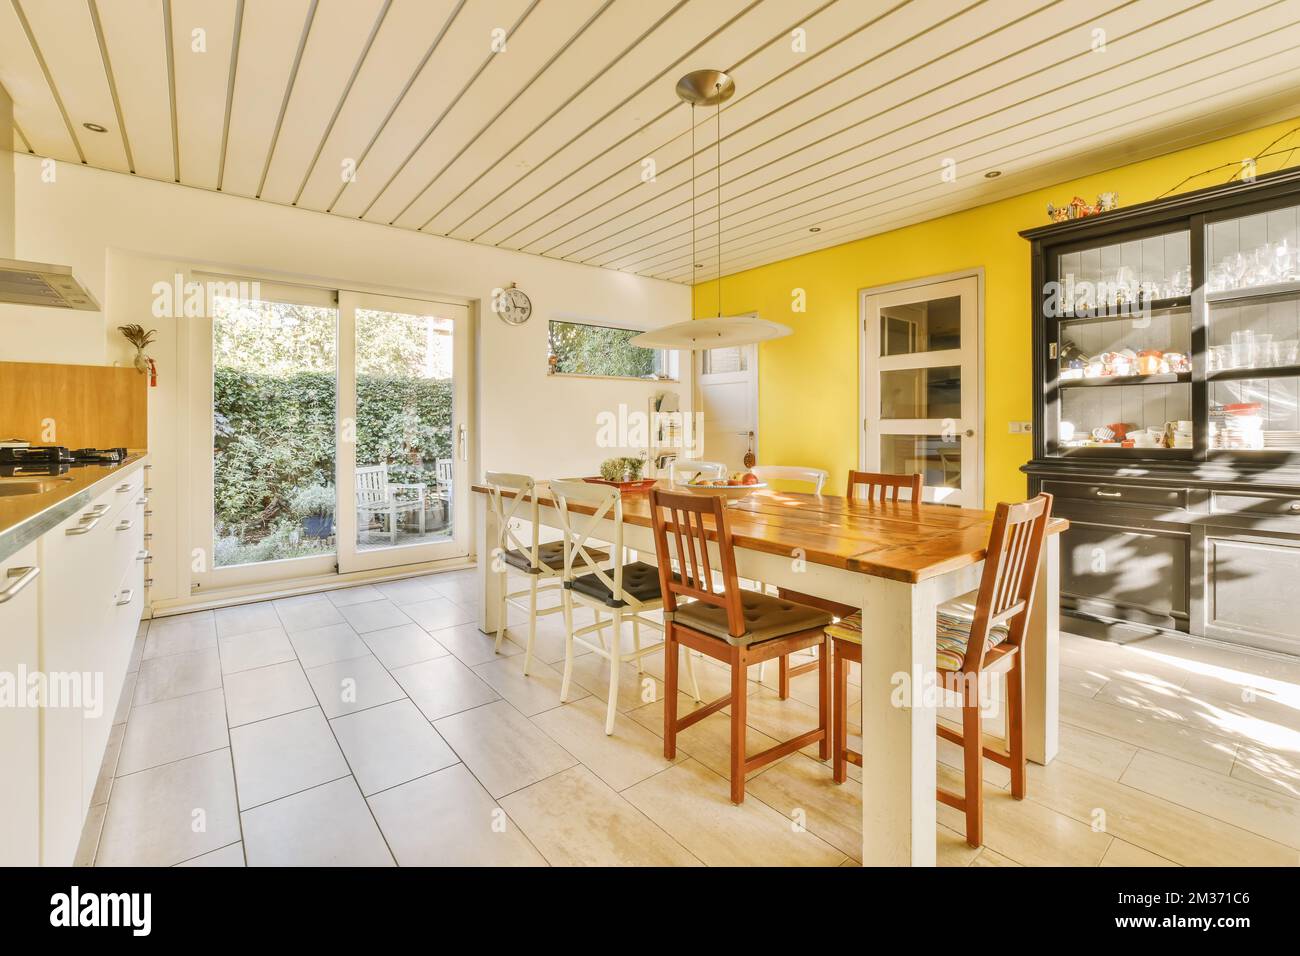 Küche und Essbereich in einem Haus mit weißen Fliesen auf dem Boden, gelb bemalten Wänden und Decken Stockfoto